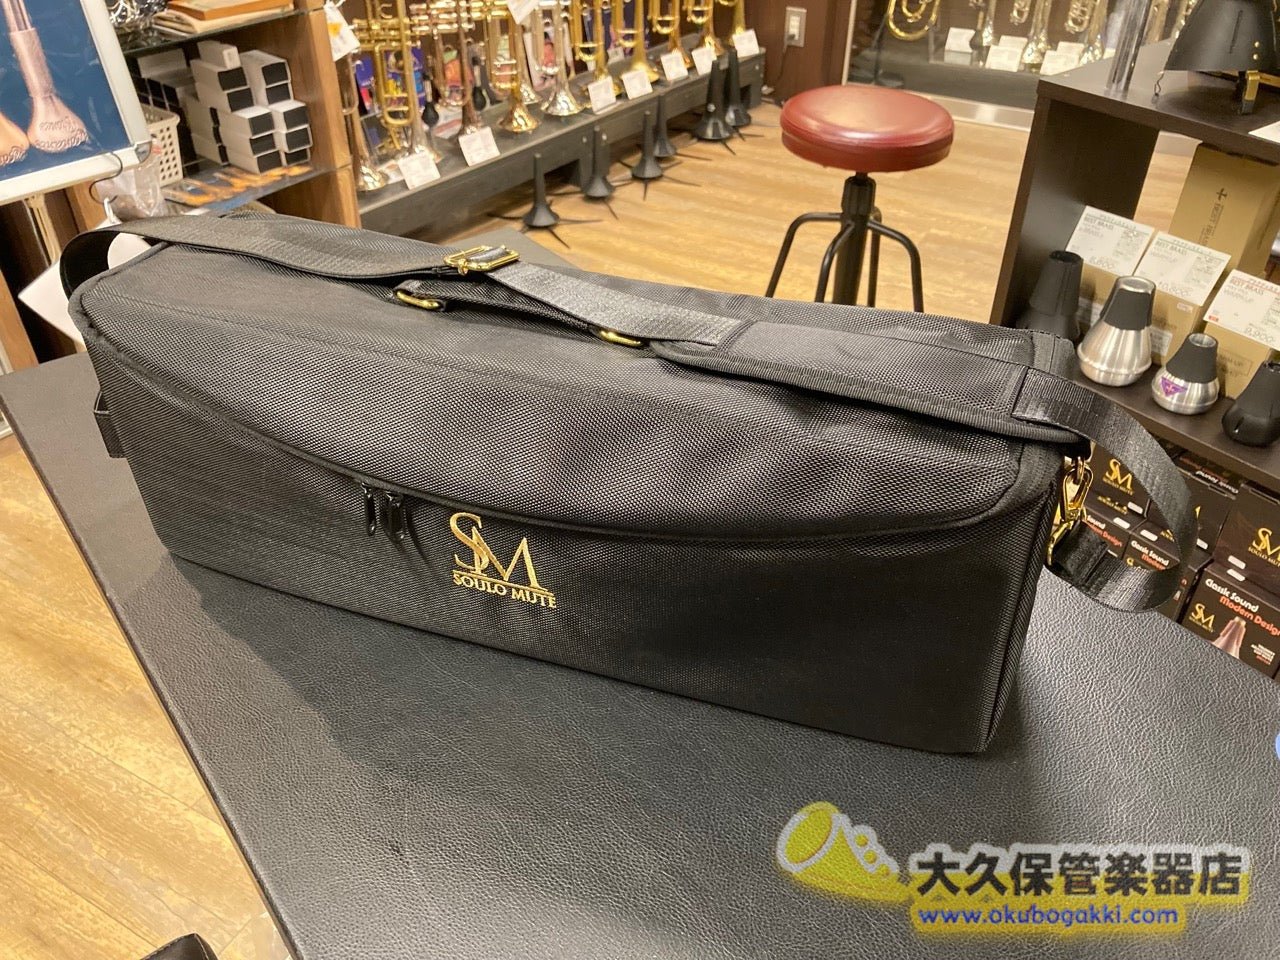 特価日本製ルイヴィトンの新しい郵便配達バッグのトランペット バッグ